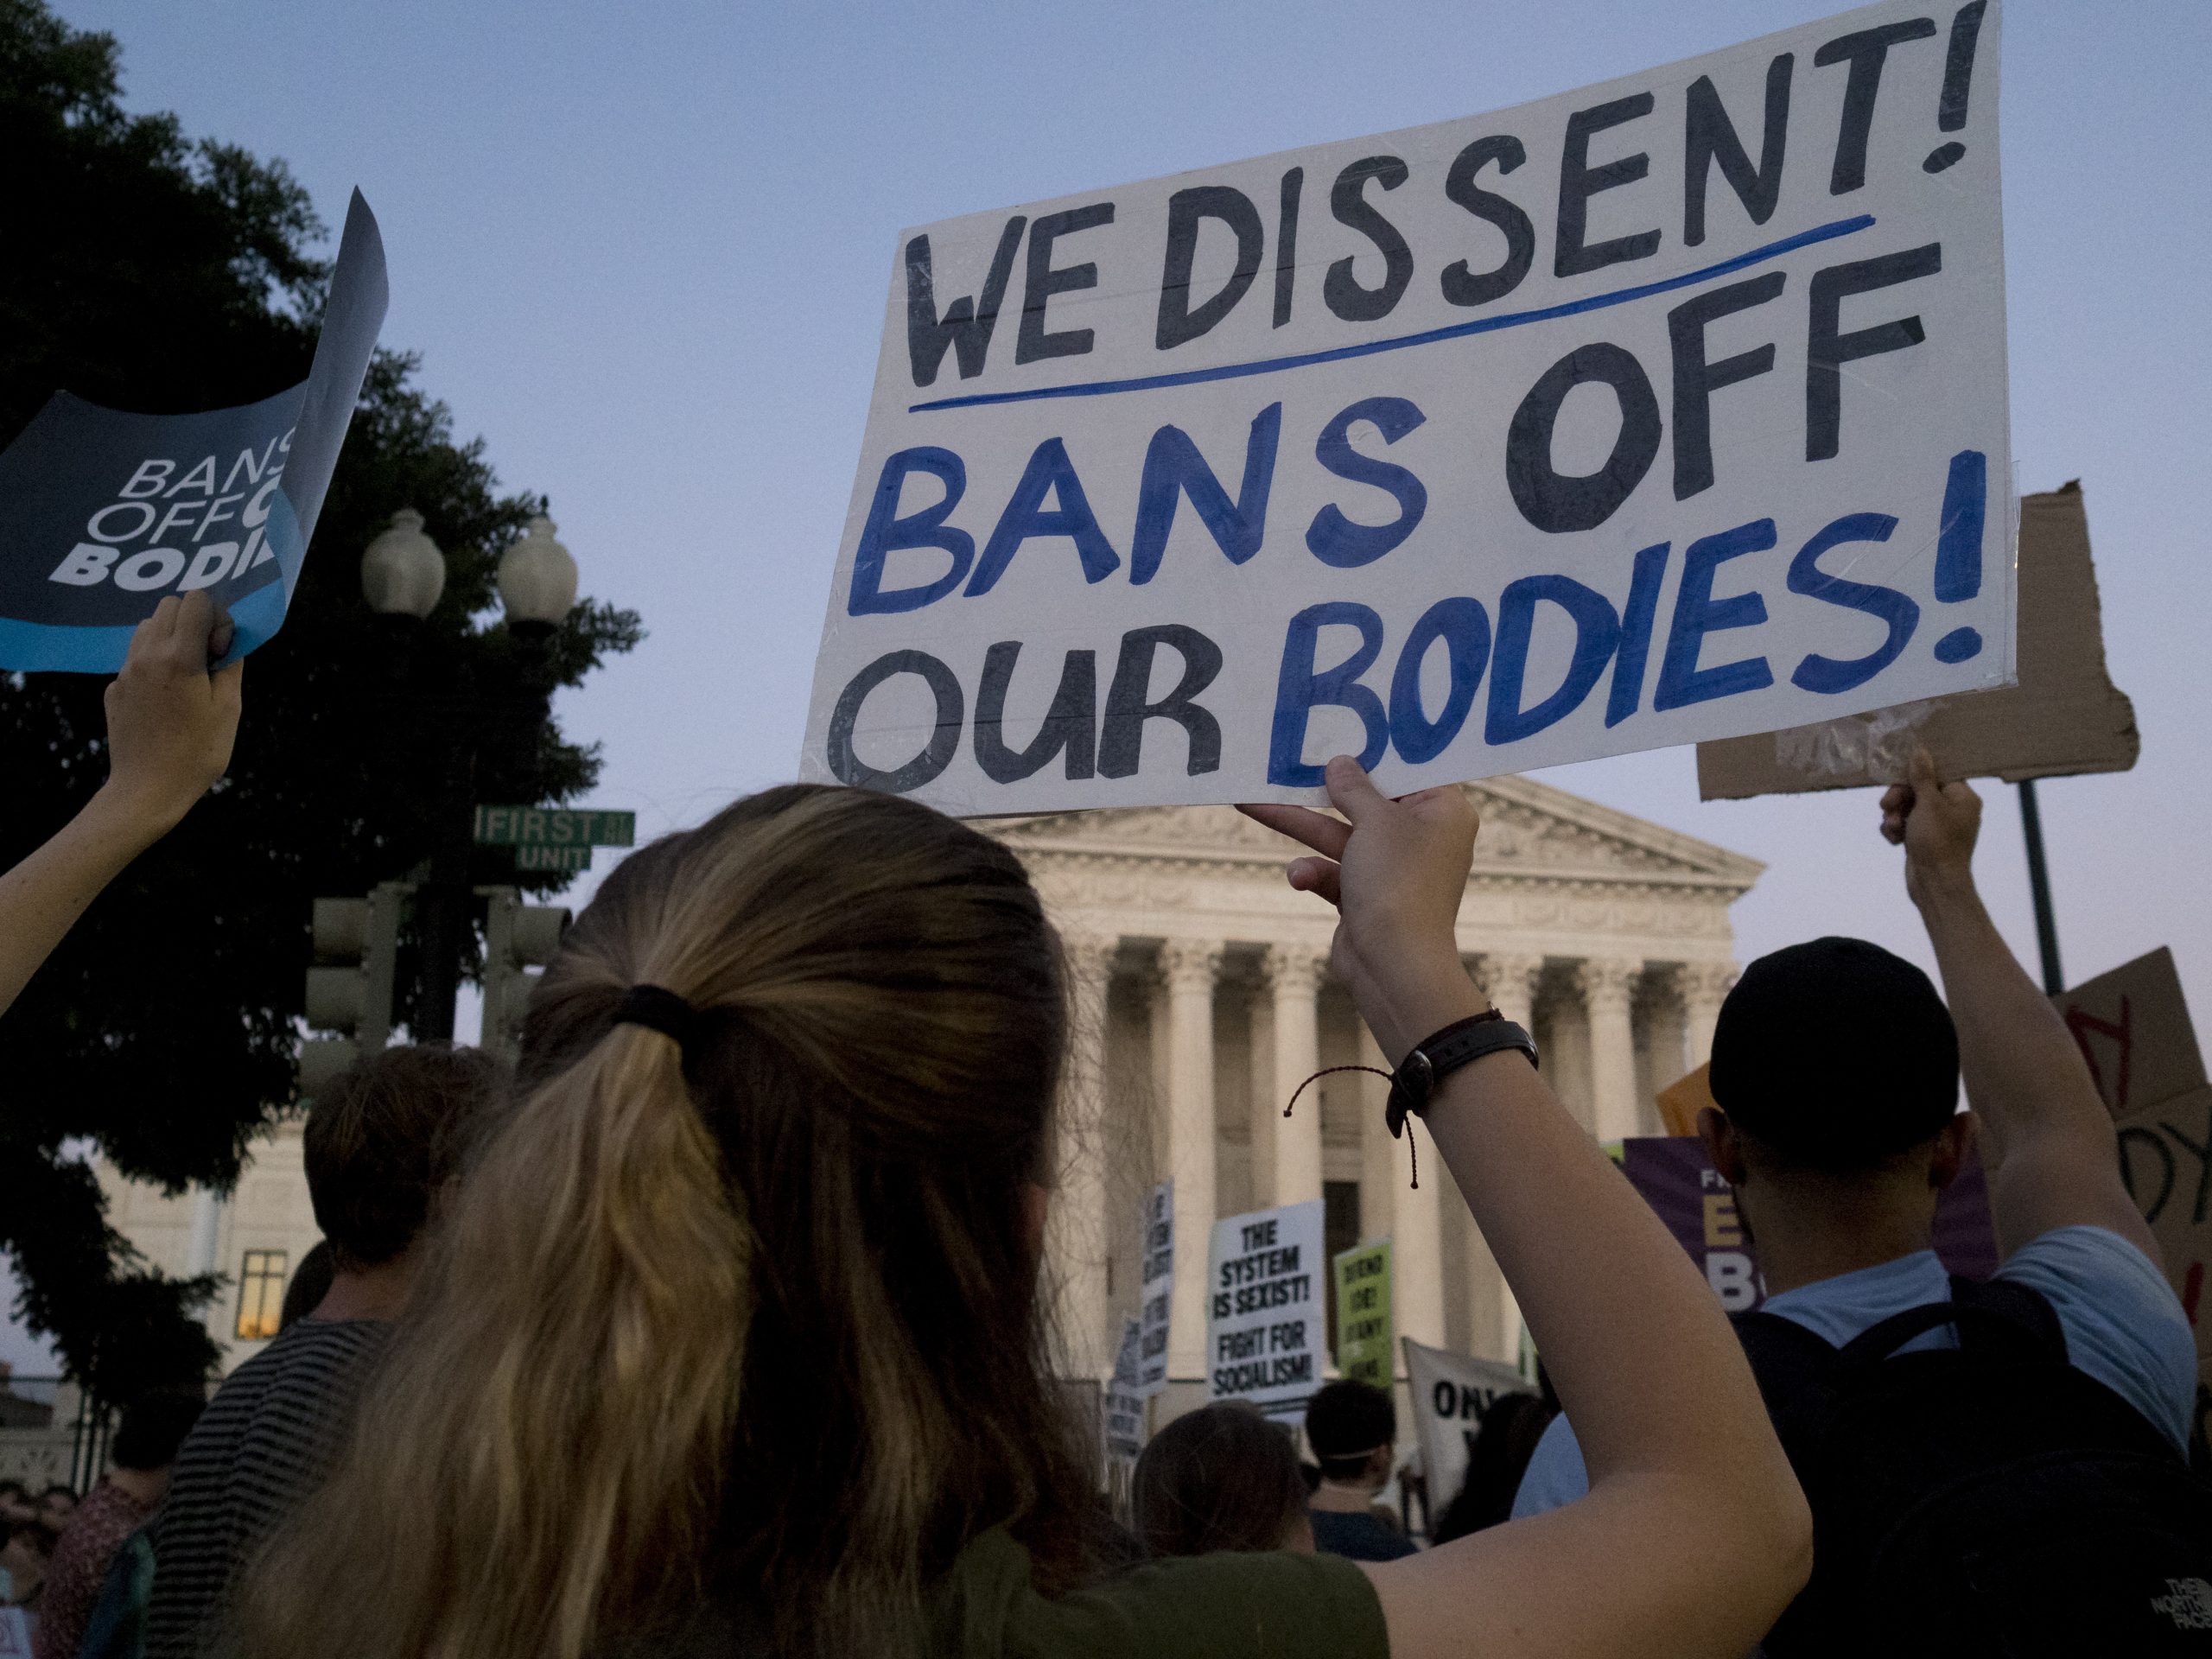 220625 Usa - Corte Suprema - aborto - proteste